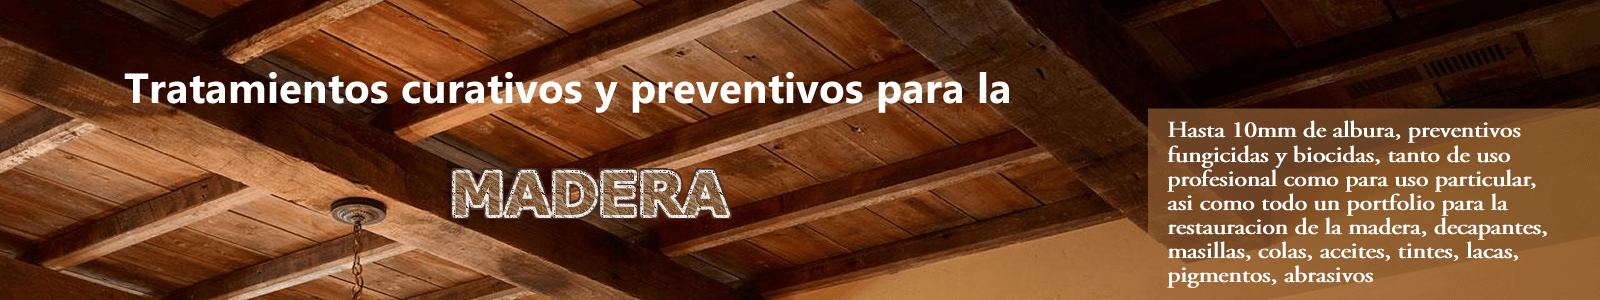 Tratamientos curativos y preventivos para la madera